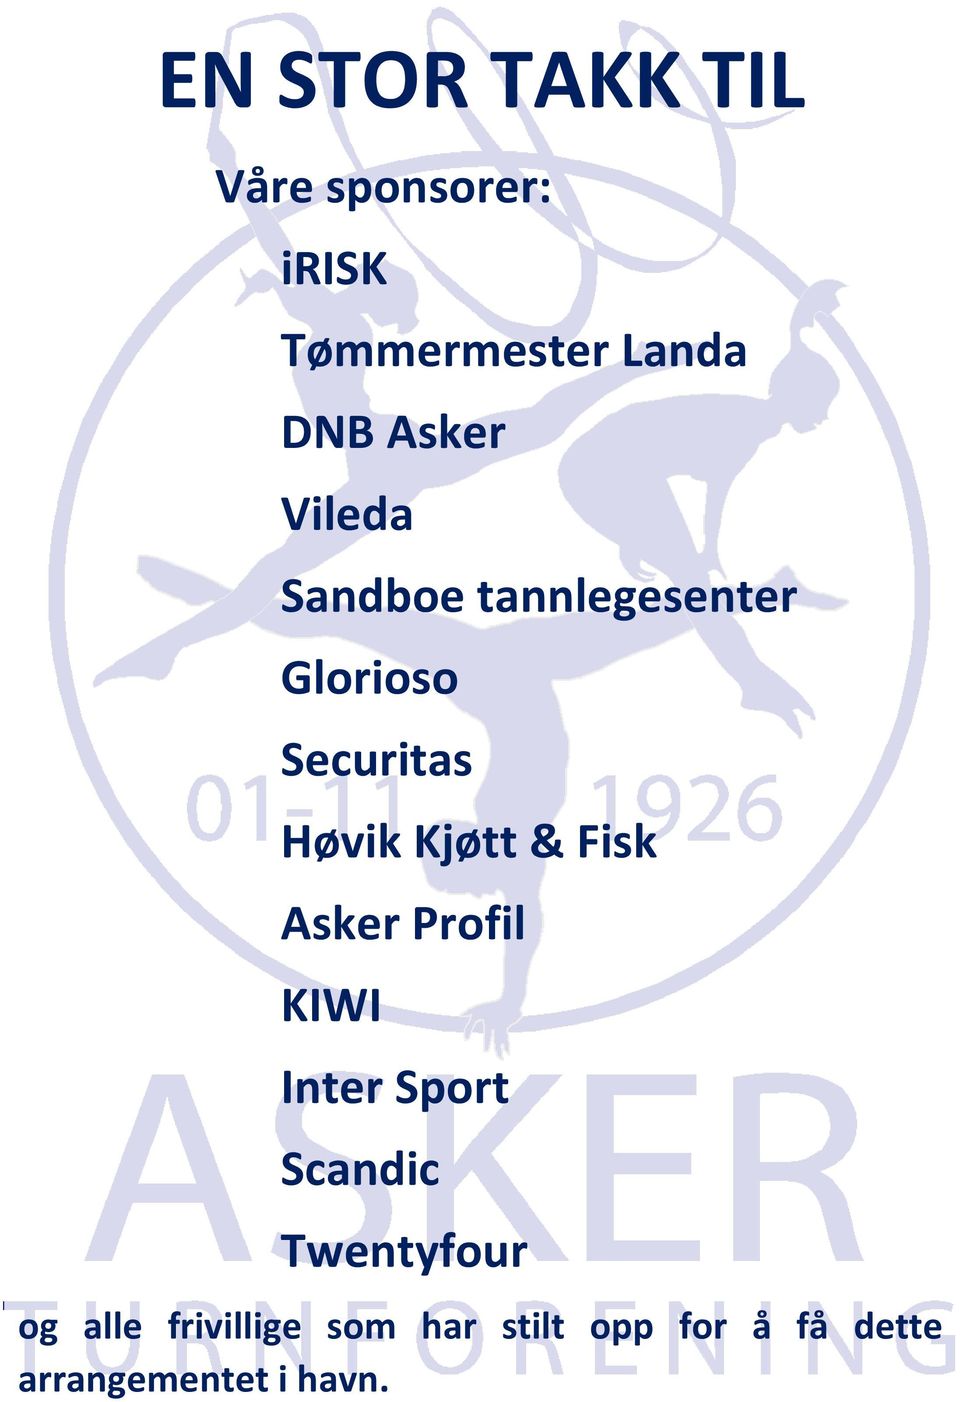 Kjøtt & Fisk Asker Profil KIWI Inter Sport Scandic Twentyfour og